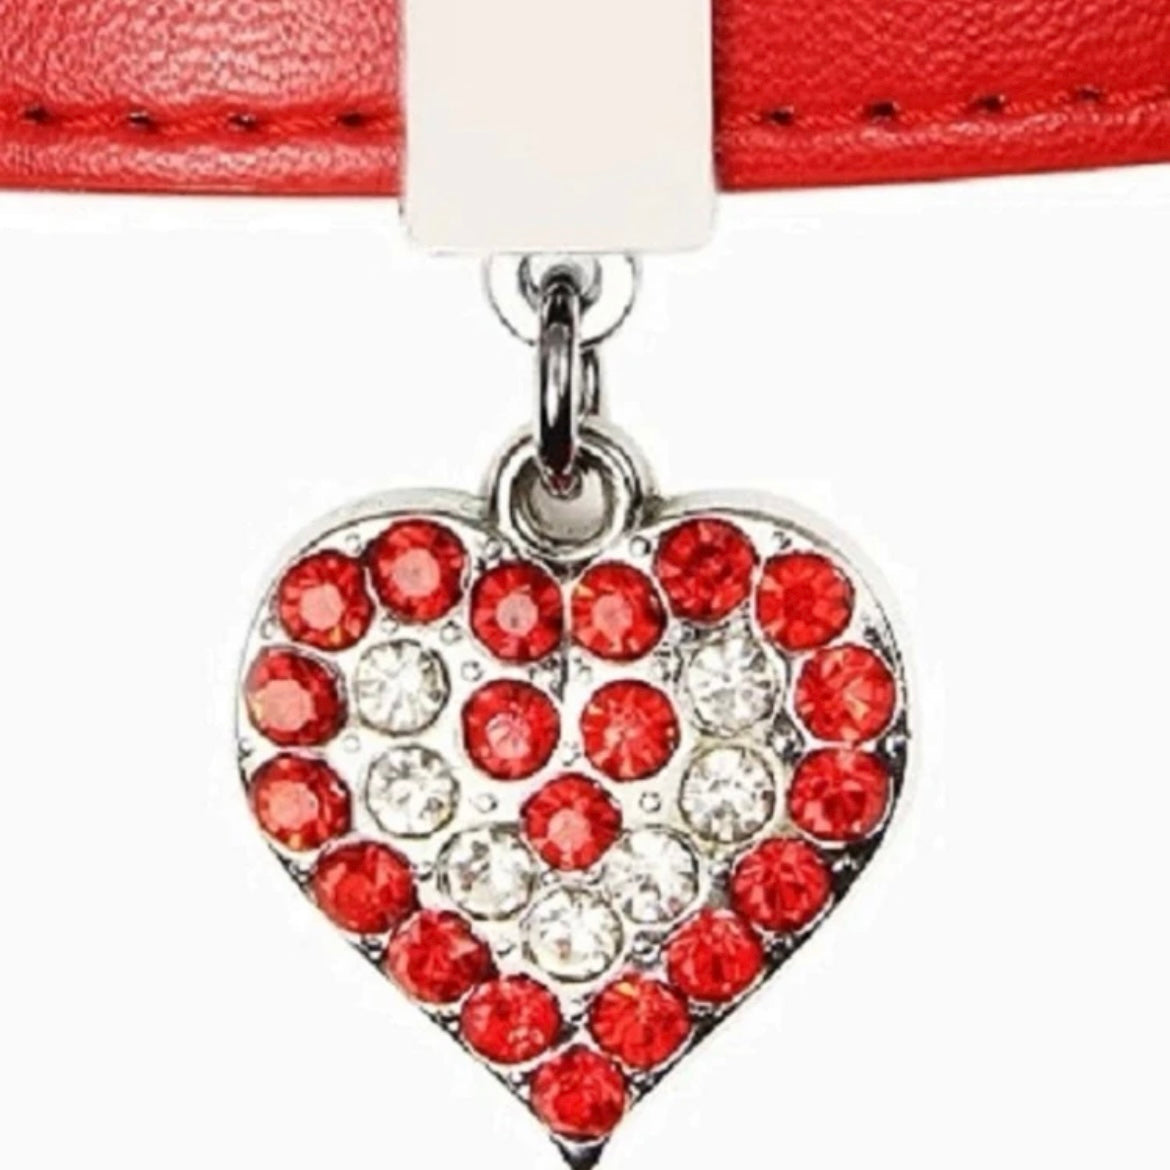 Red Heart Dog Collar